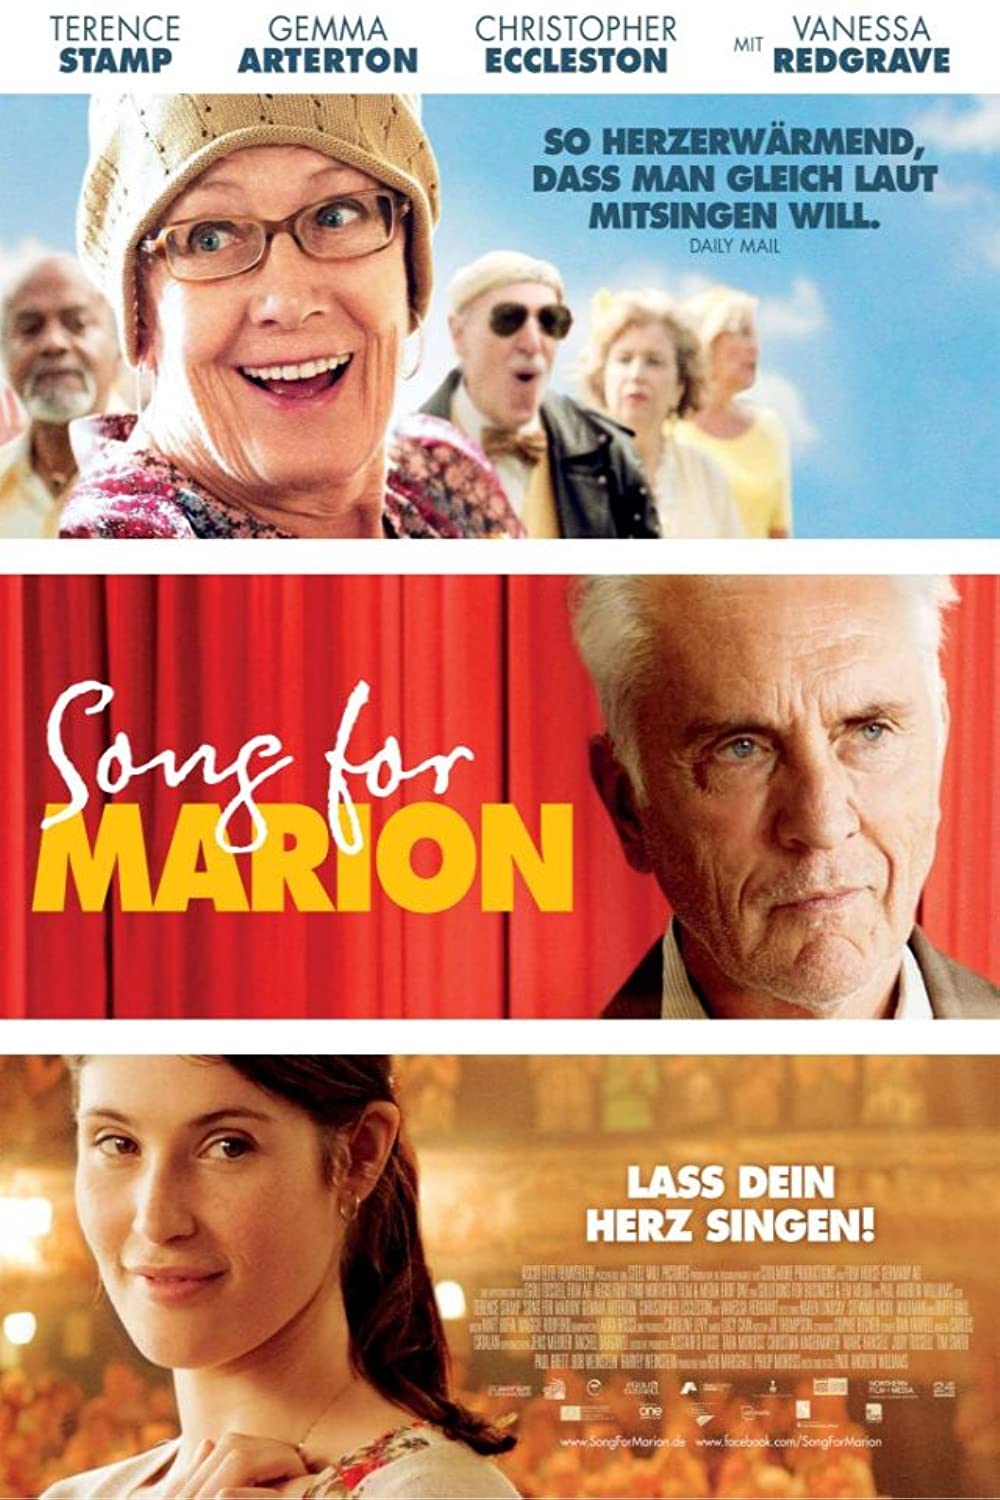 Filmbeschreibung zu Song for Marion